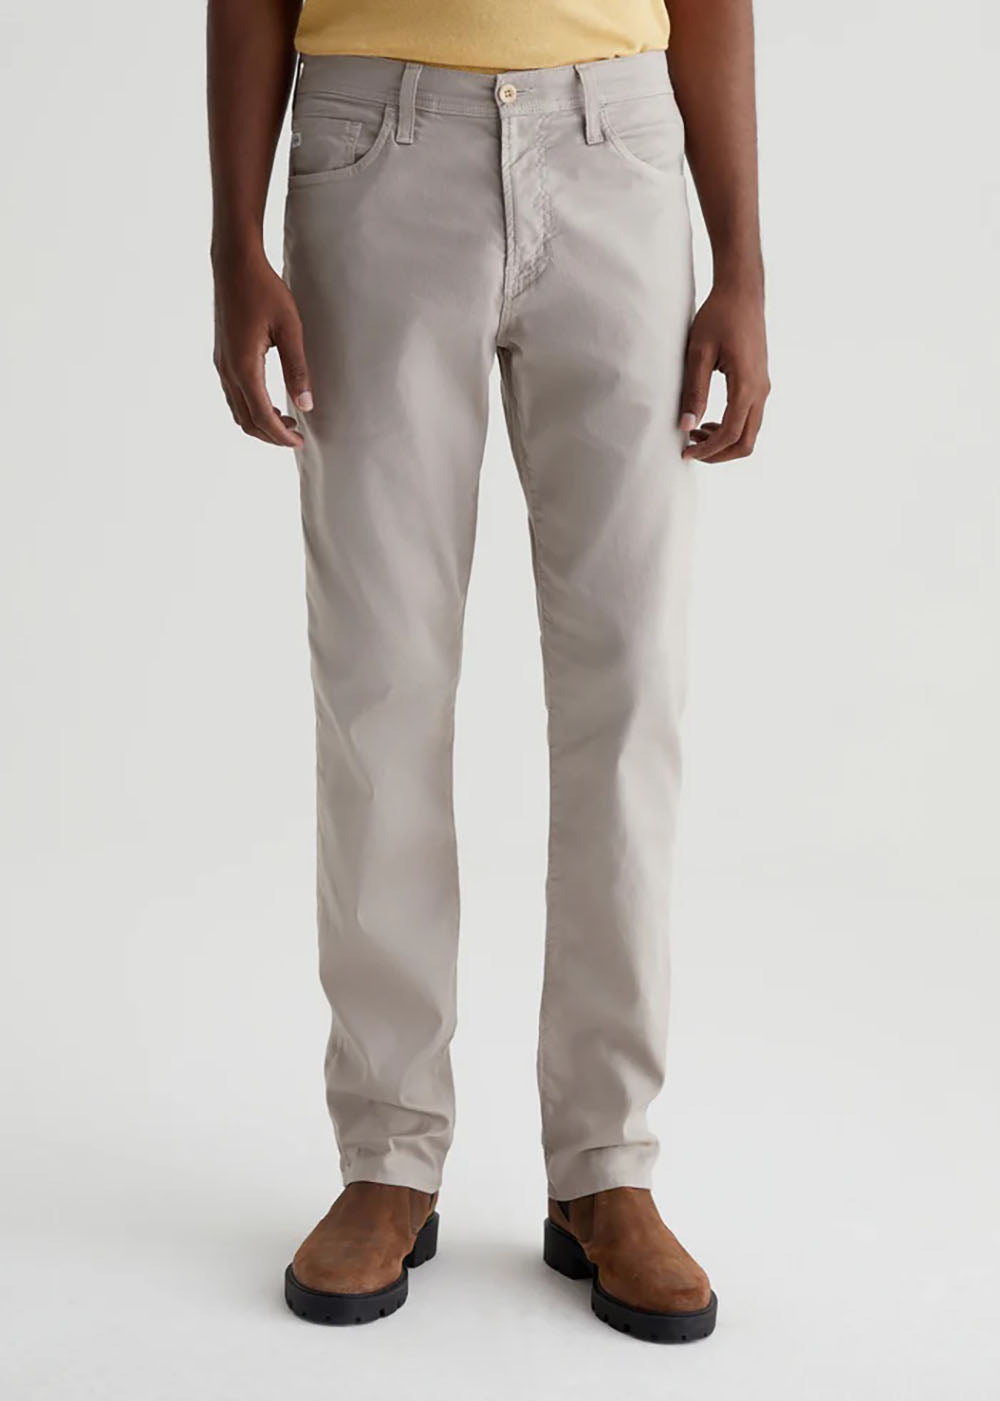 Everett Slim Straight Pant - Oyster Shore - AG Jeans Canada - Danali - 1794LTLOYSH